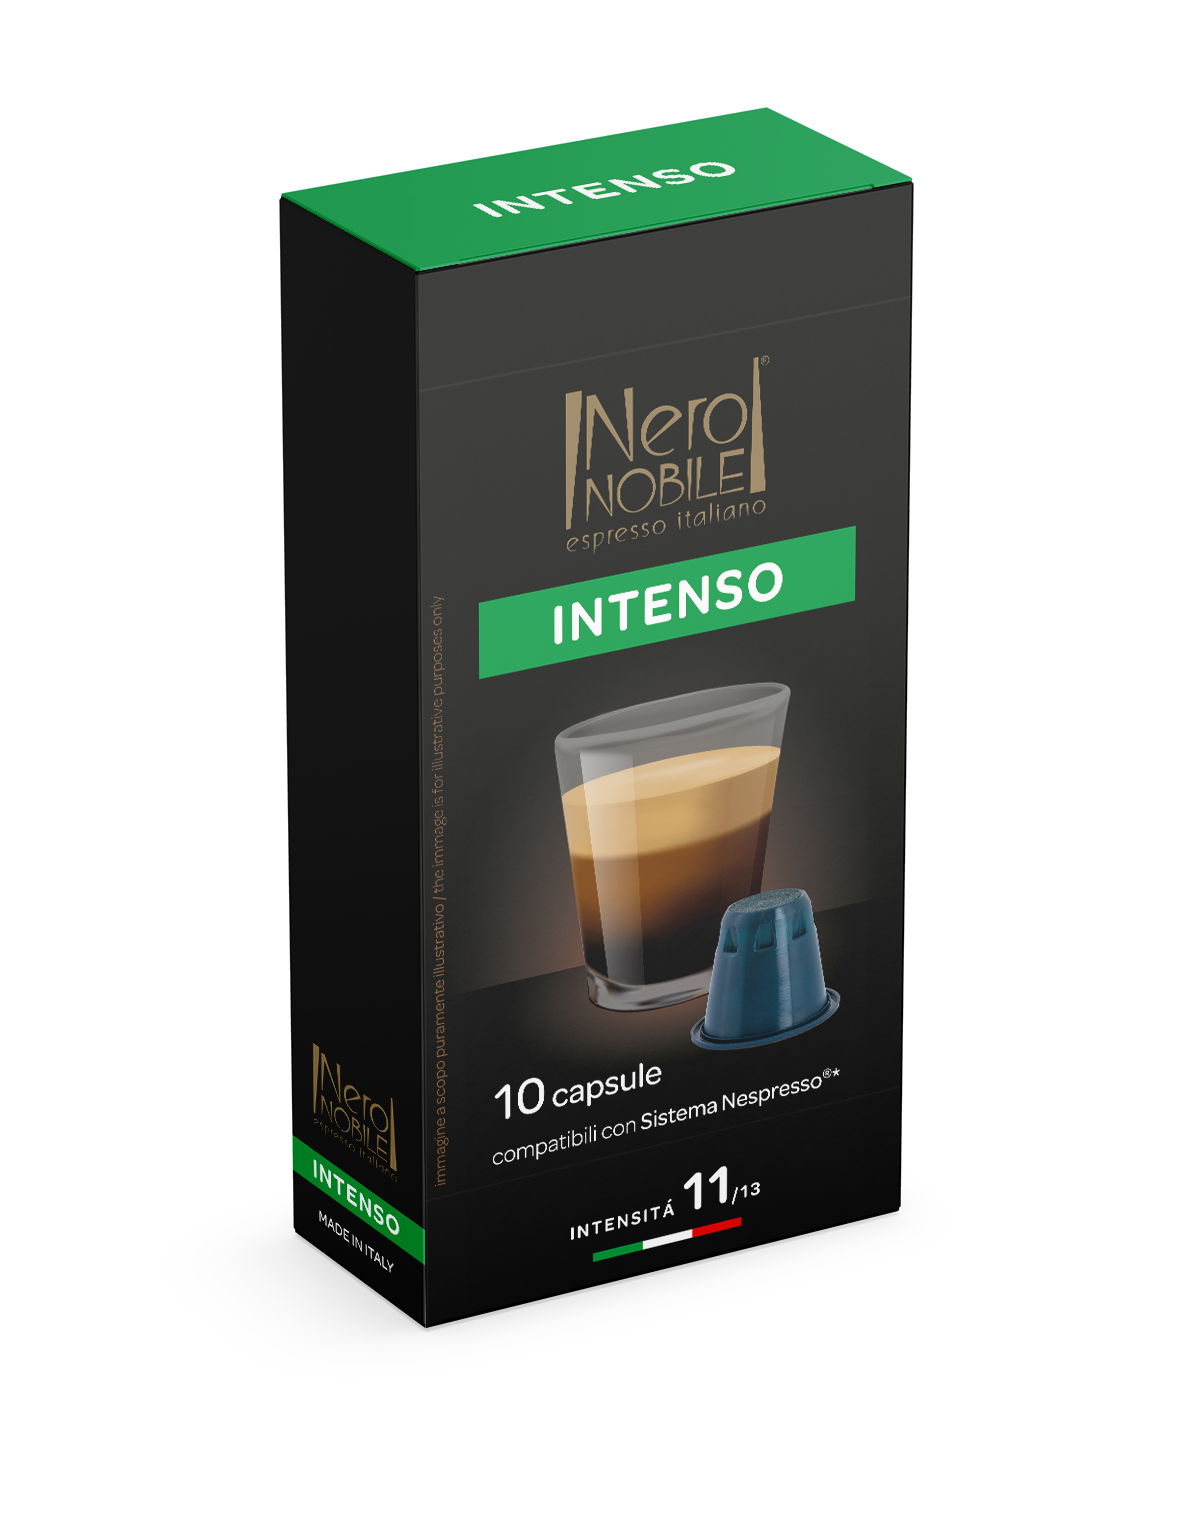 INTENSO - 10 caps. compatible Nespresso®